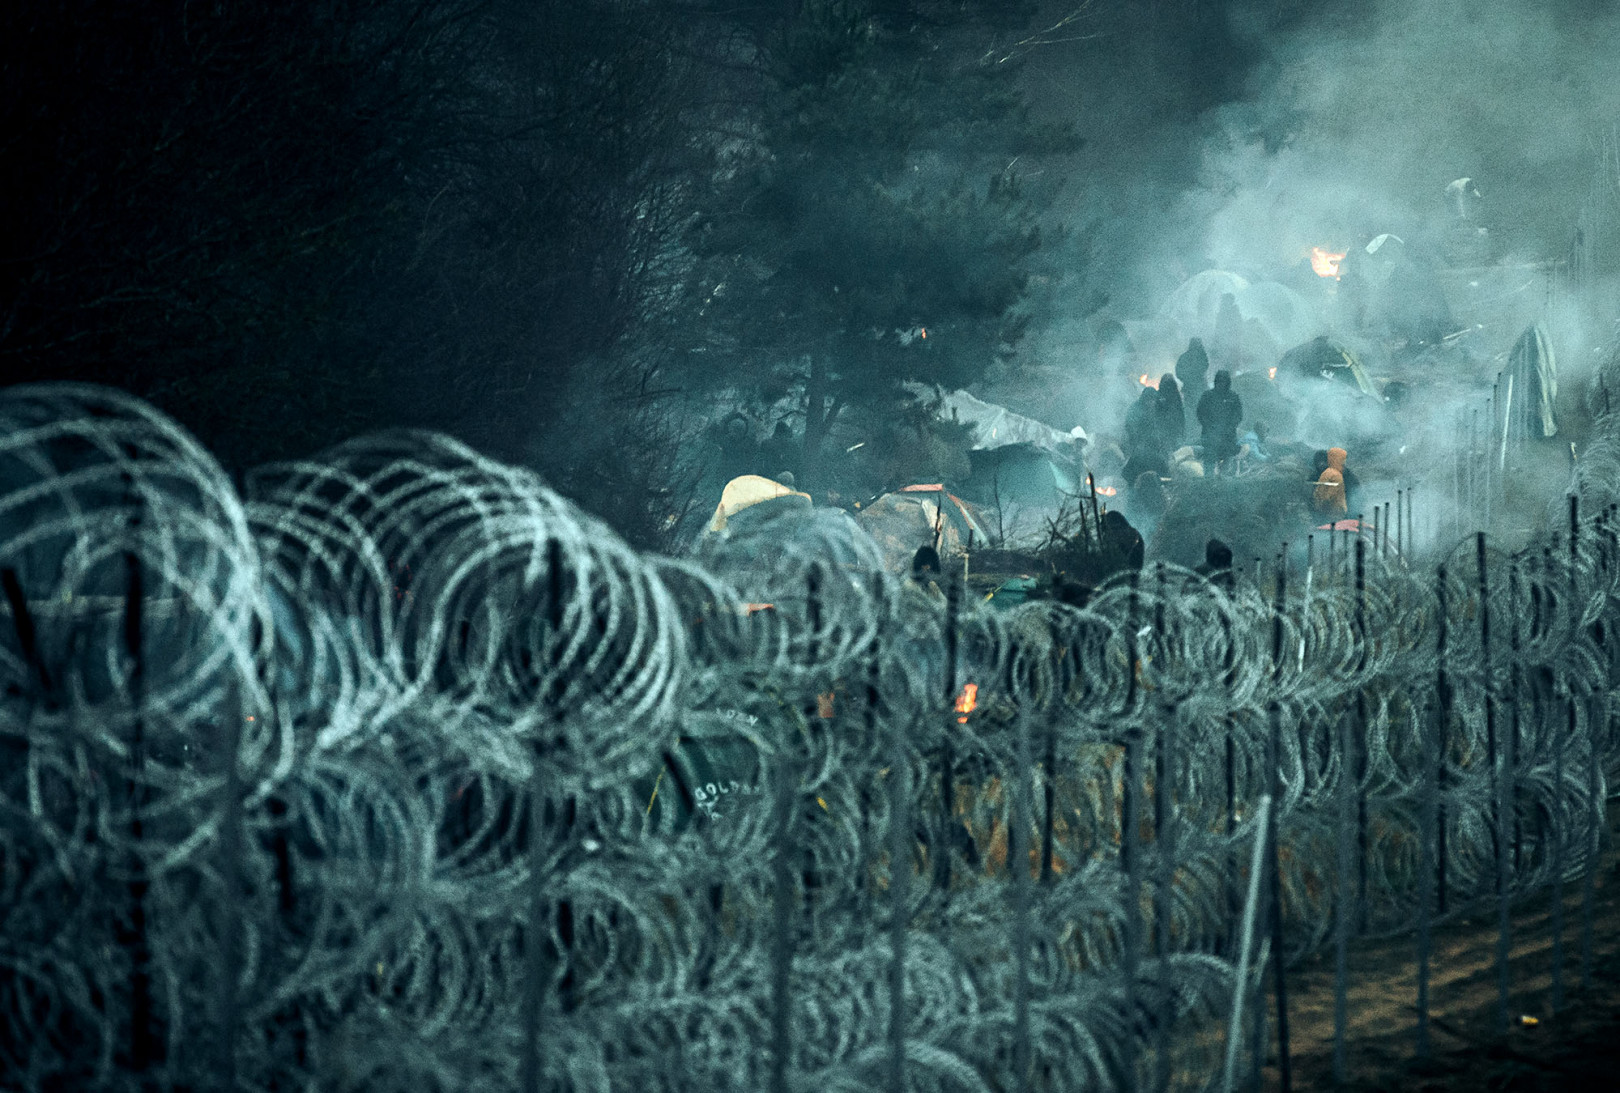 Menekültek a lengyel-belarusz határon felhúzott kerítés mögött a belarusz oldalon 2021. november 9-én – Fotó: Irek Dorozanski / Polish Ministry of National Defence / Getty Images